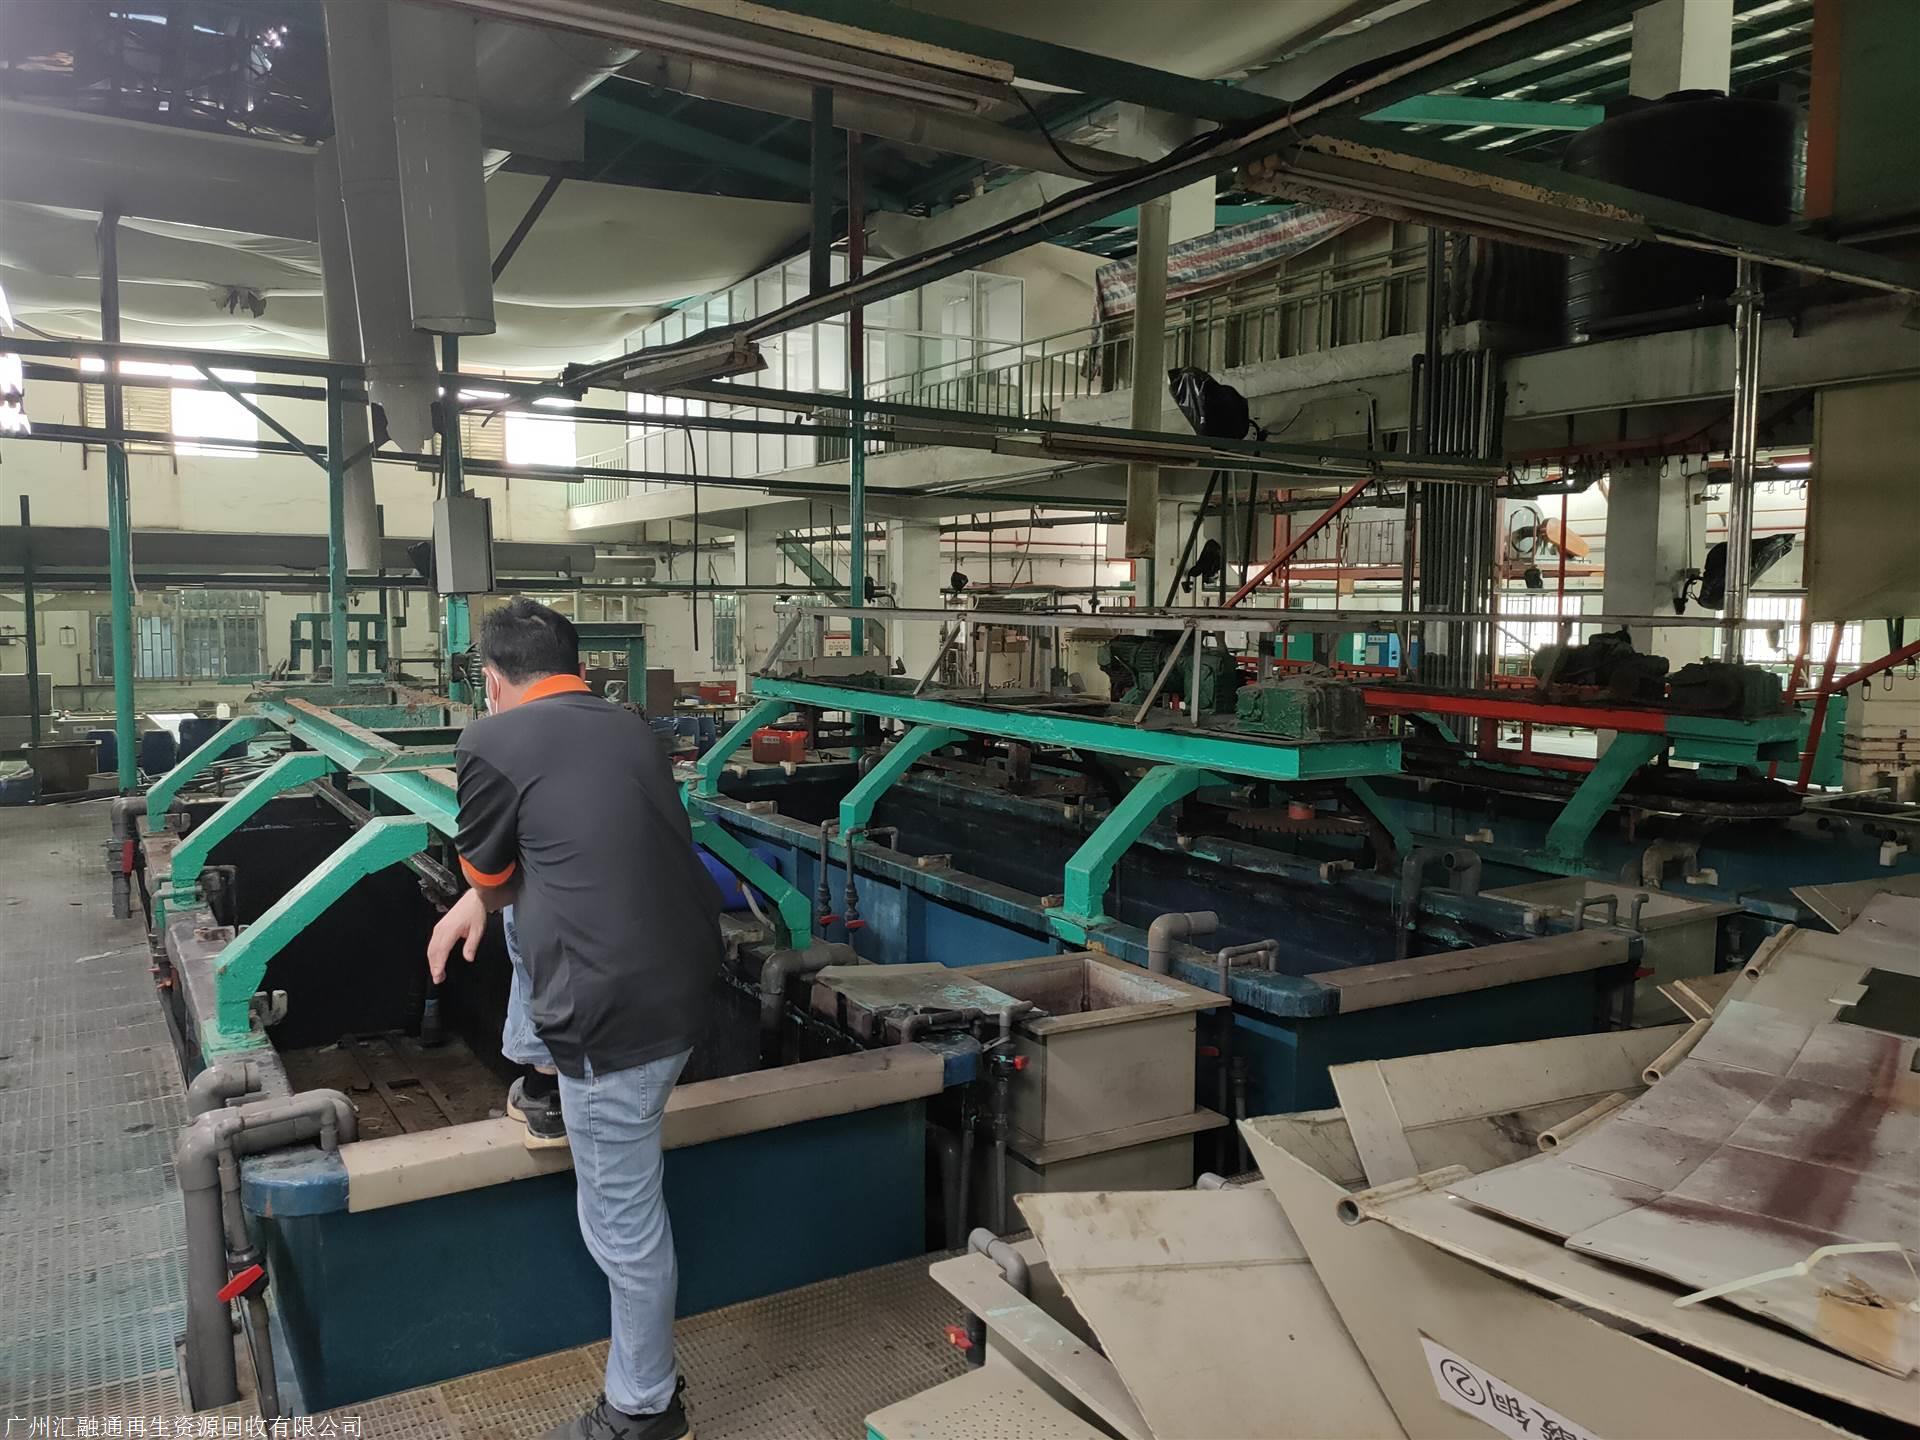 潮州市废弃工厂拆除回收-潮州市化工厂设备回收公司